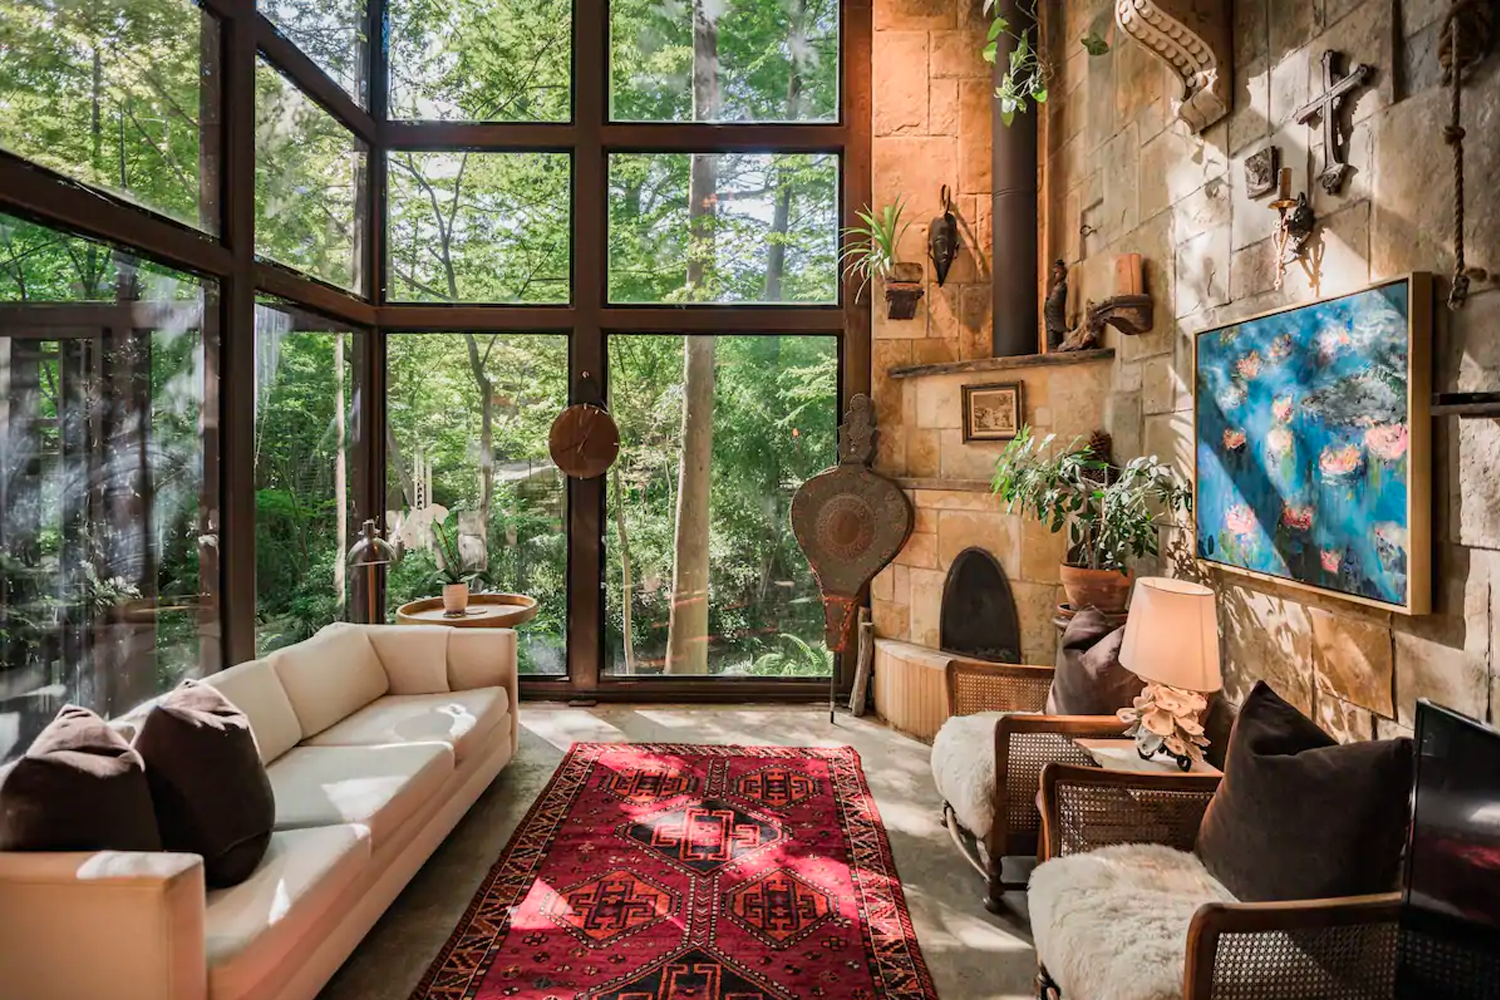 Se dice que el interior de la casa de madera es una mezcla de la elegancia rústica cálida y contemporánea de la Bauhaus